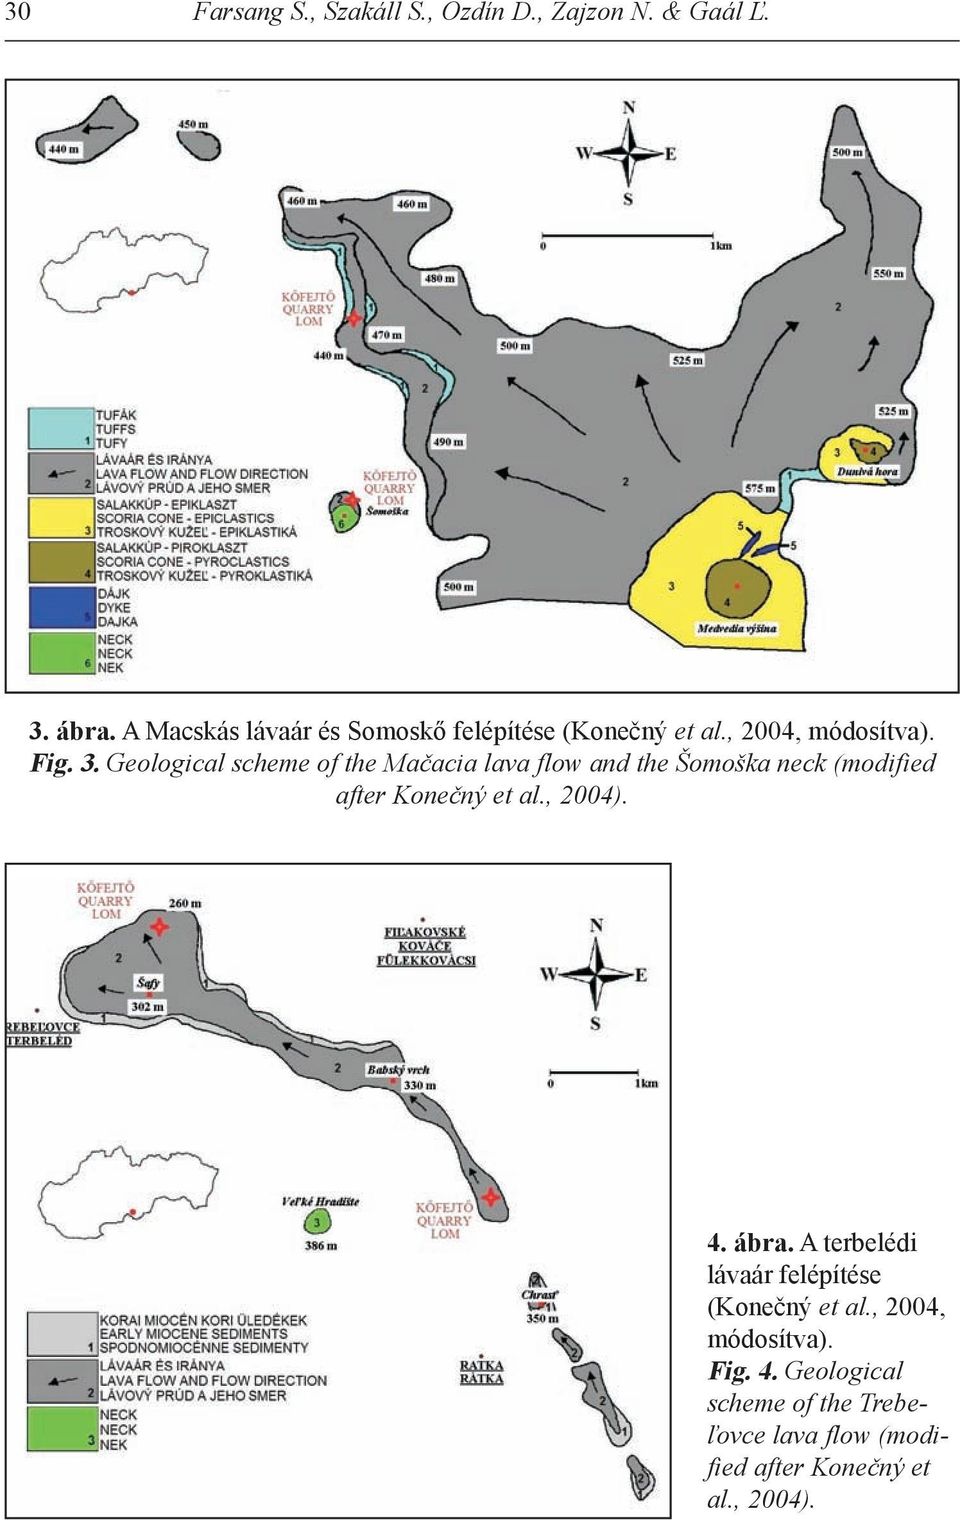 Geological scheme of the Mačacia lava flow and the Šomoška neck (modified after Konečný et al., 2004). 4.